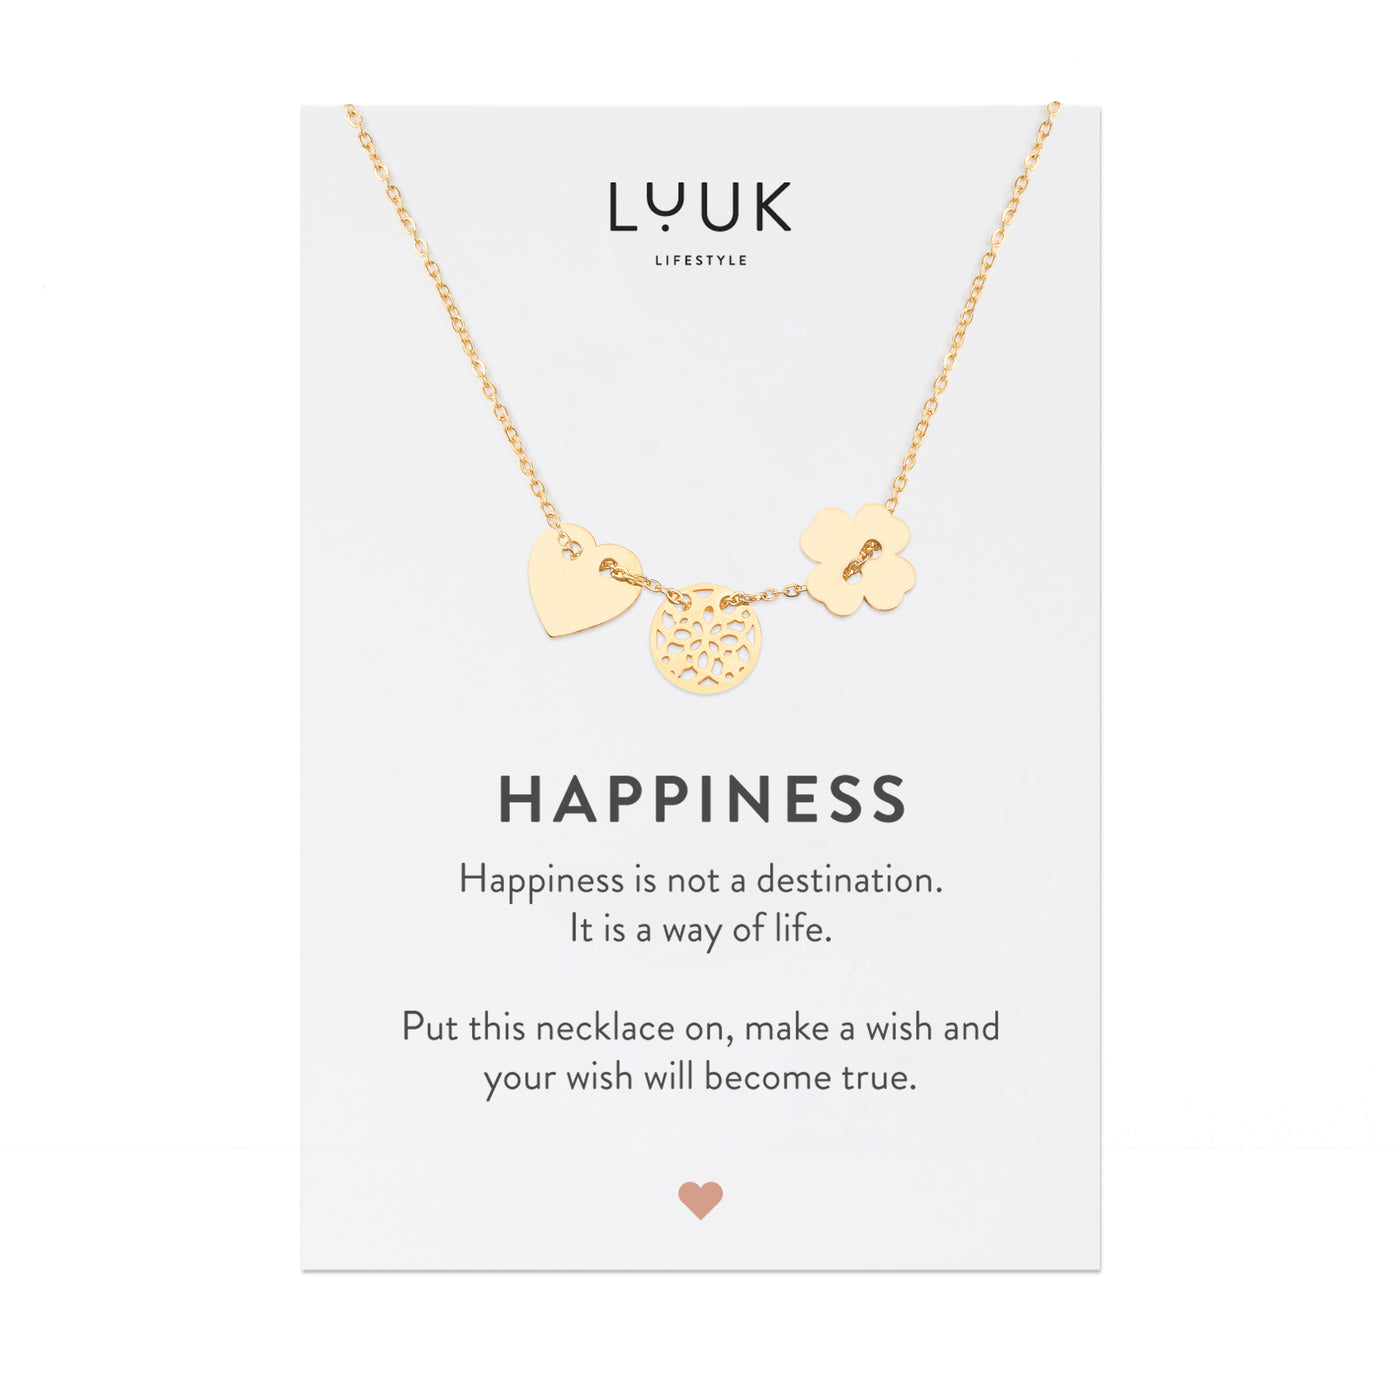 Goldene Halskette mit Glücksbringer Anhänger auf Happiness Spruchkarte von der Brand Luuk Lifestyle 